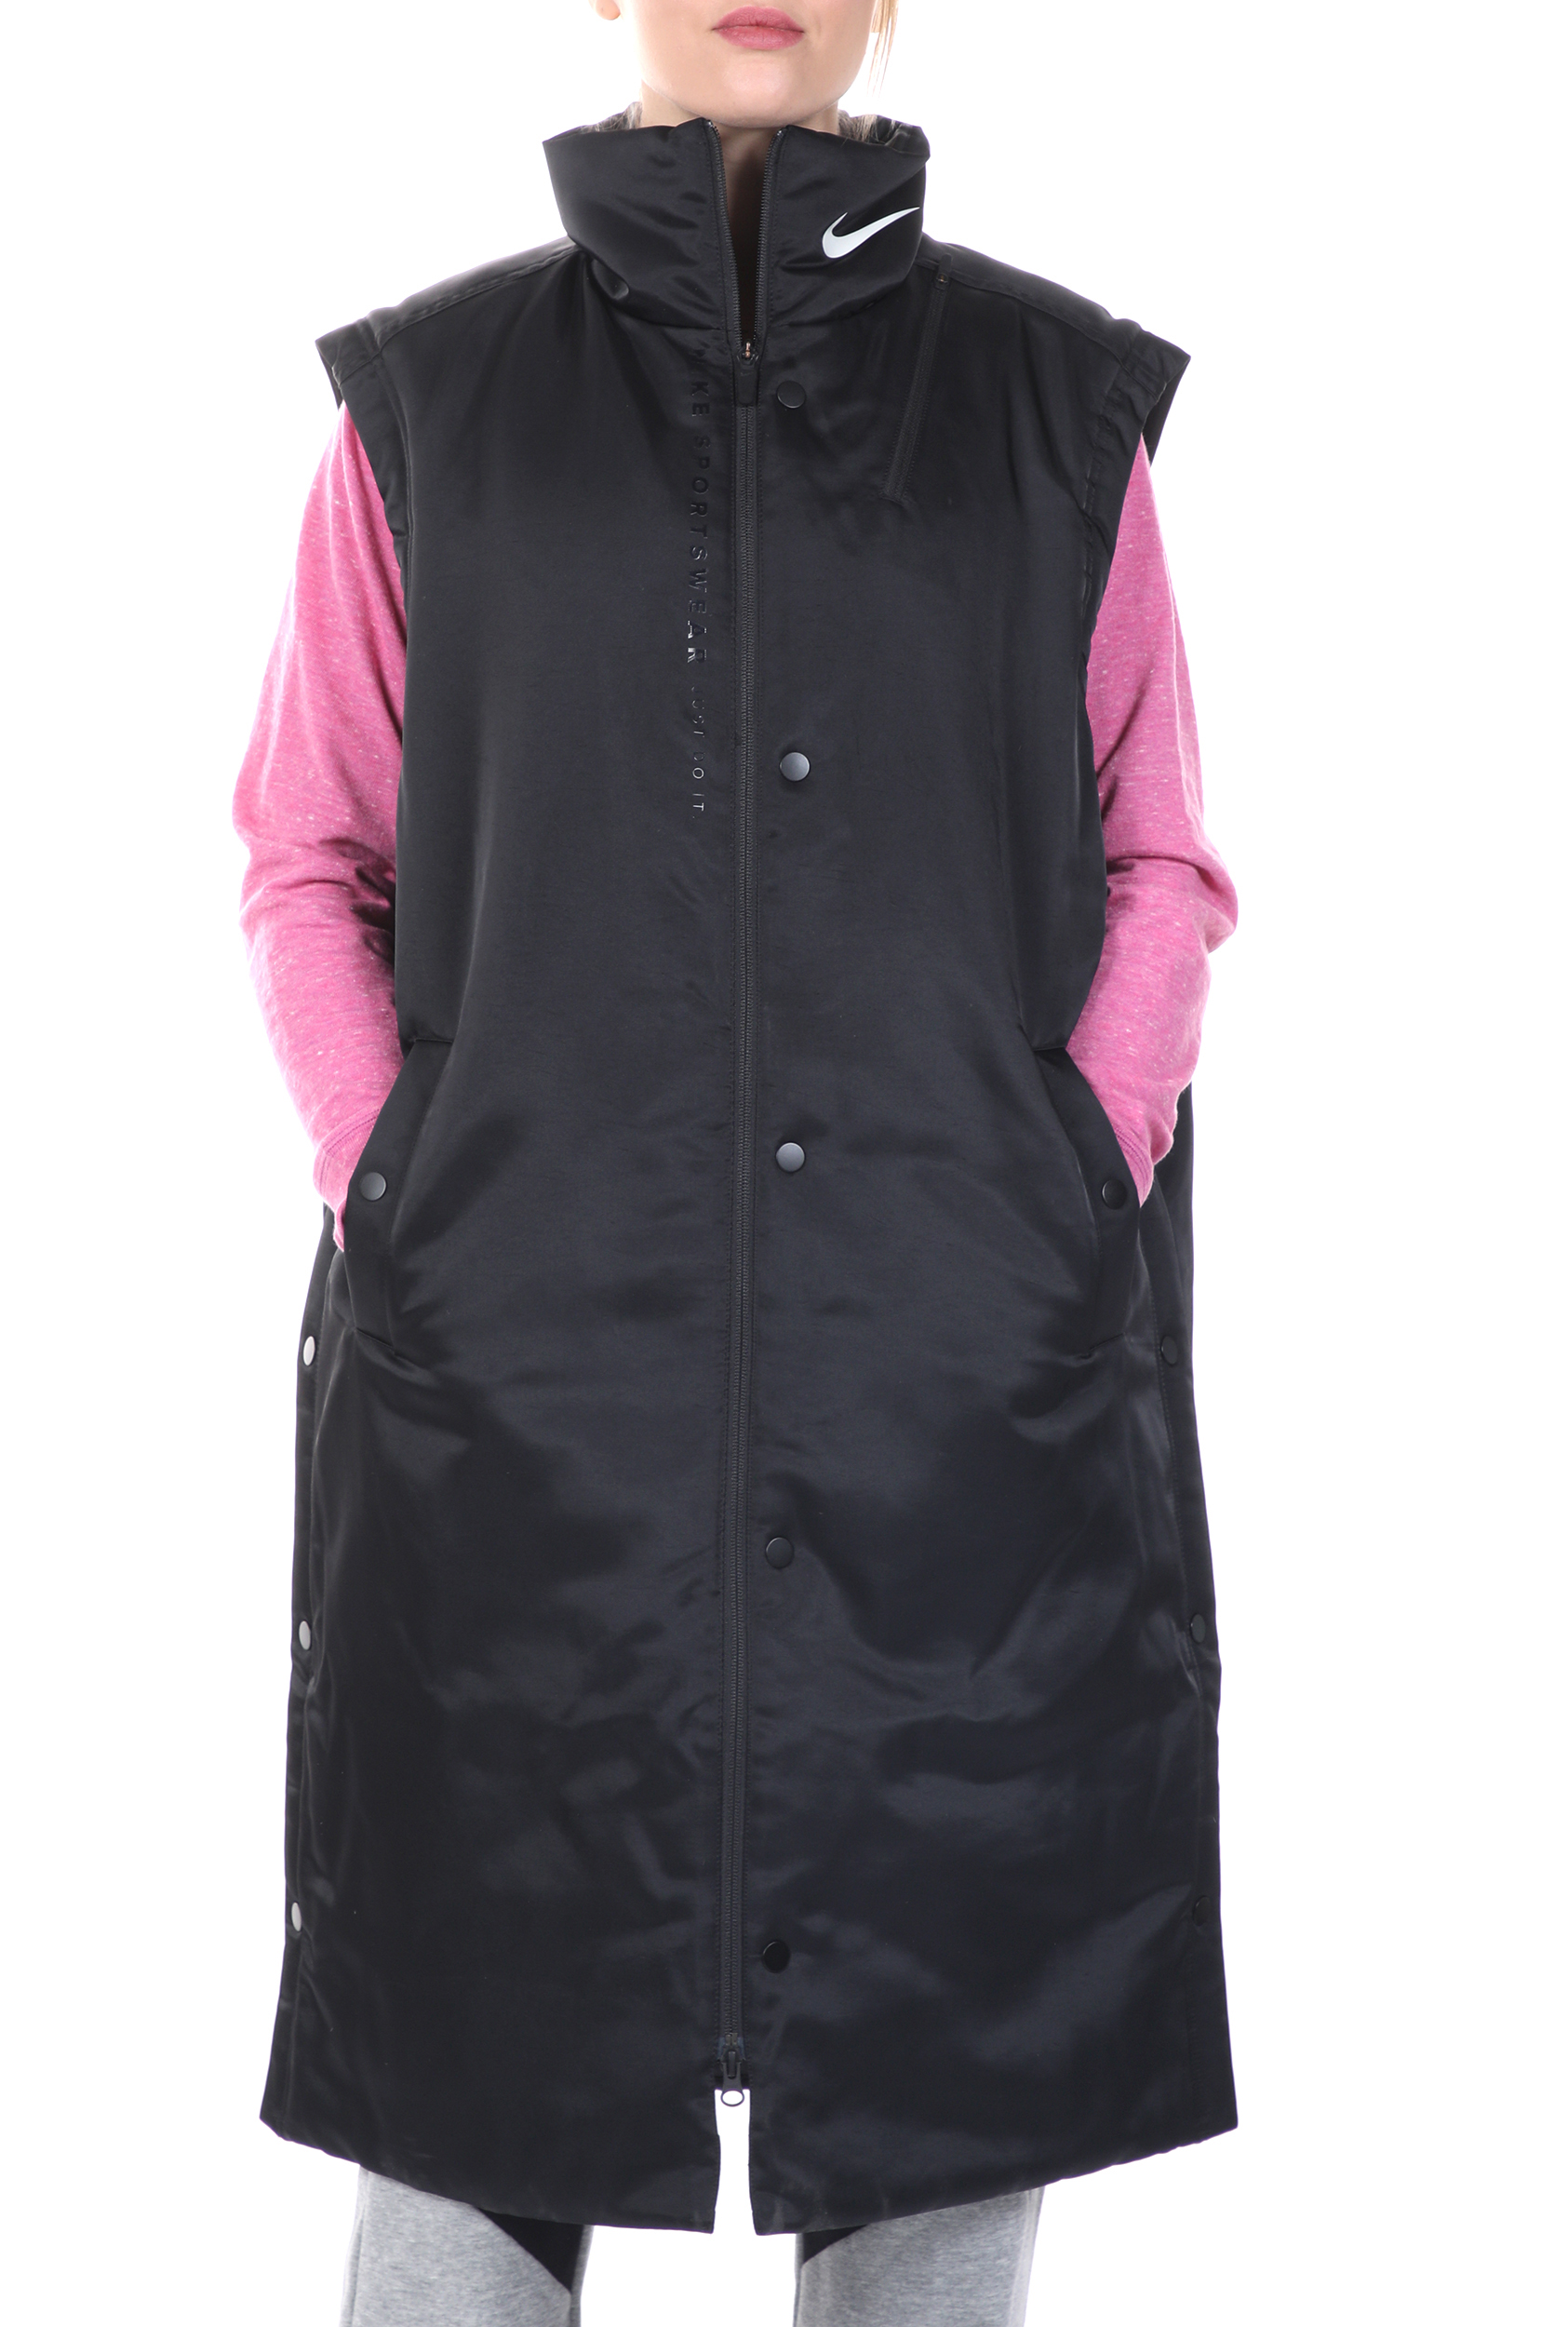 Γυναικεία/Ρούχα/Πανωφόρια/Αμάνικα Μπουφάν NIKE - Γυναικείο μακρύ αμάνικο μπουφάν NIKE NSW SYN JKT TREND VEST μαύρο